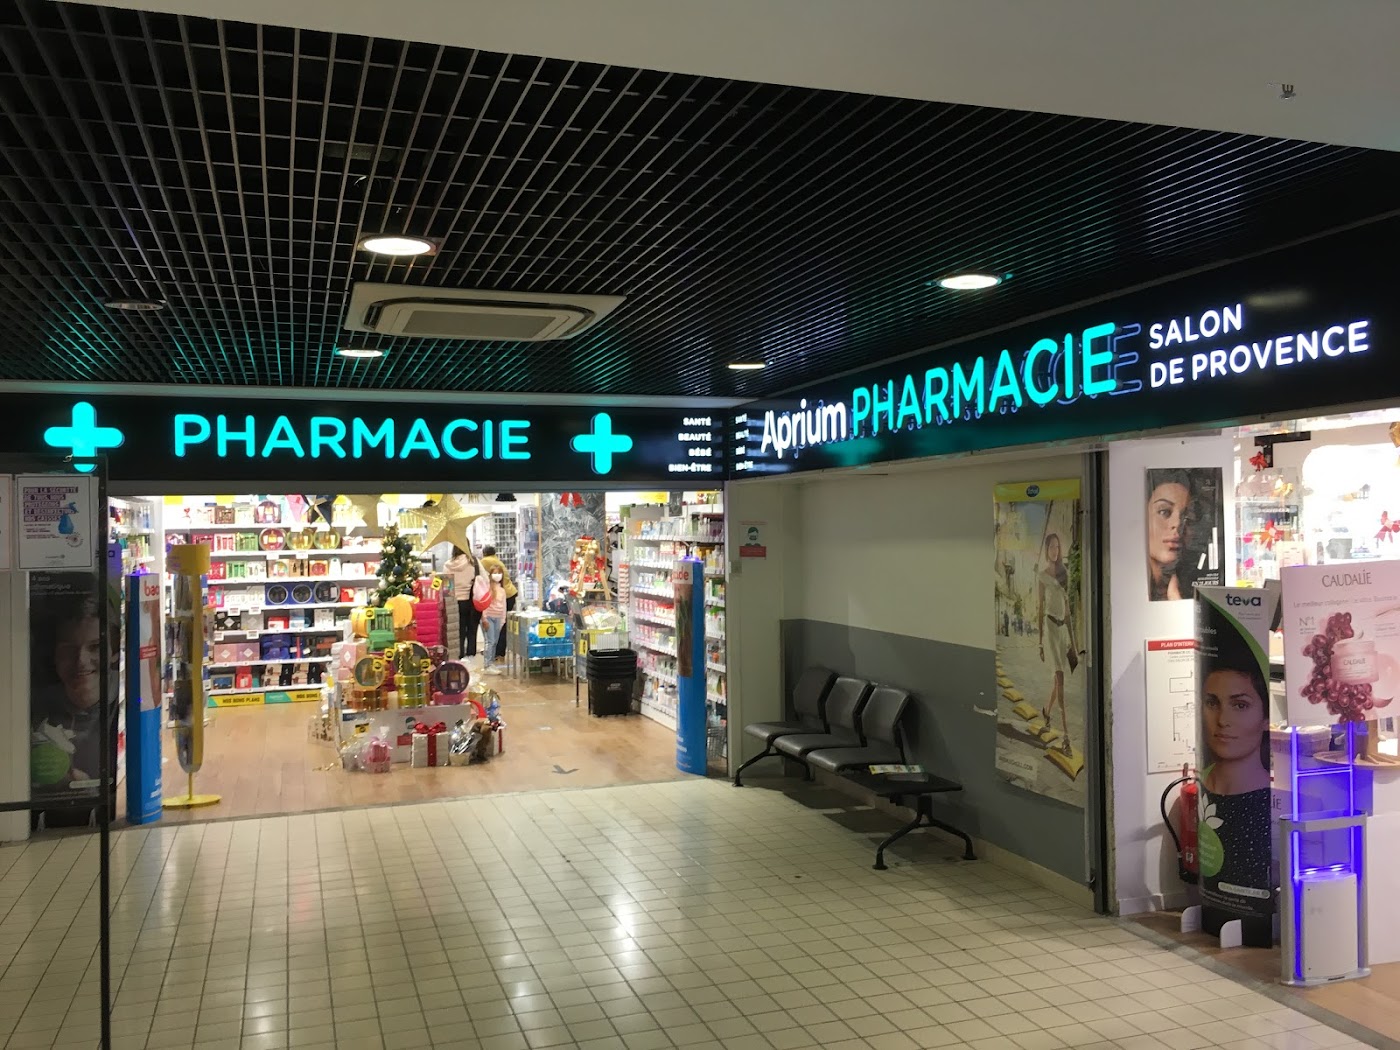 Aprium Pharmacie du Centre Commercial Salon de Provence